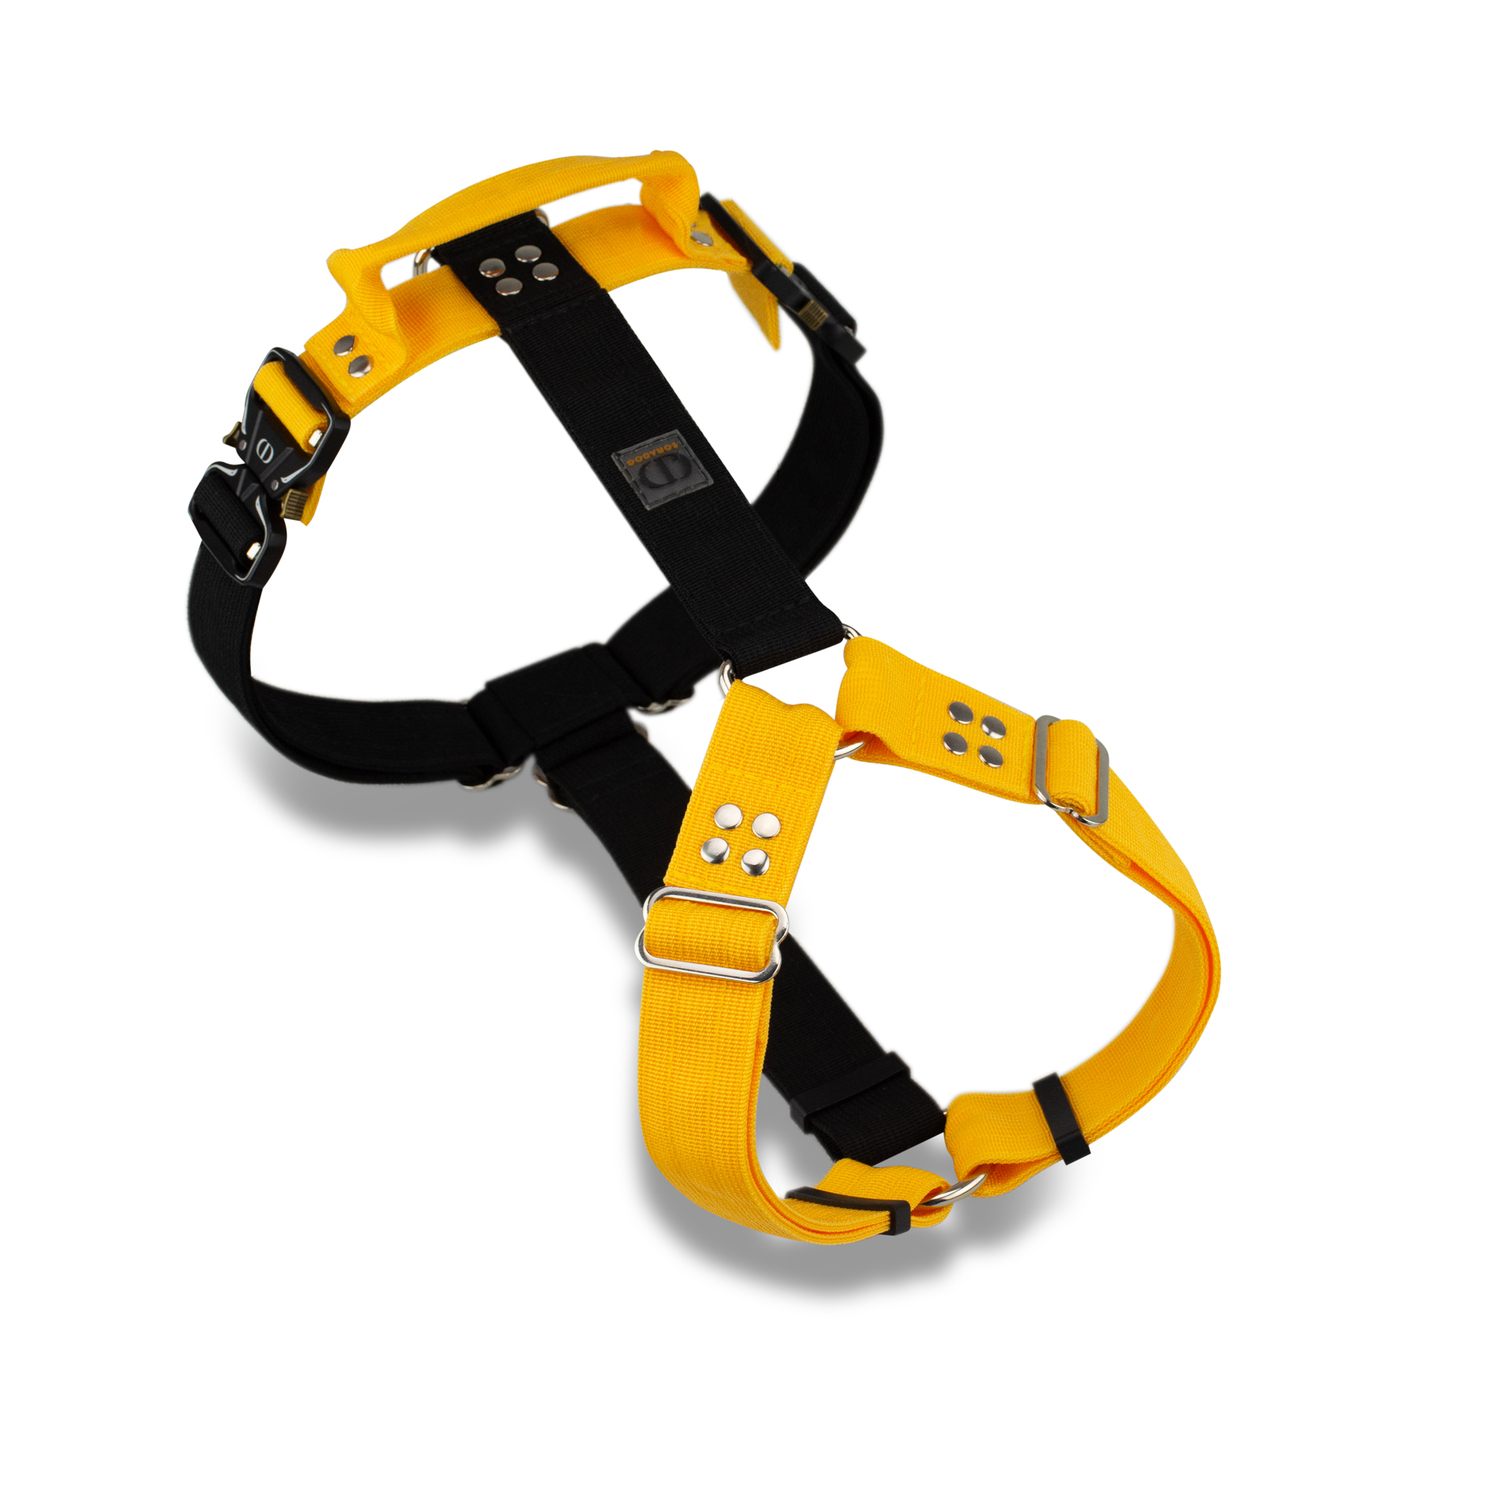 Шлейка с ручкой для собак прогулочная анатомическая, для ЗКС, тренировок, CORADOG Double Power цвет желтый, черный